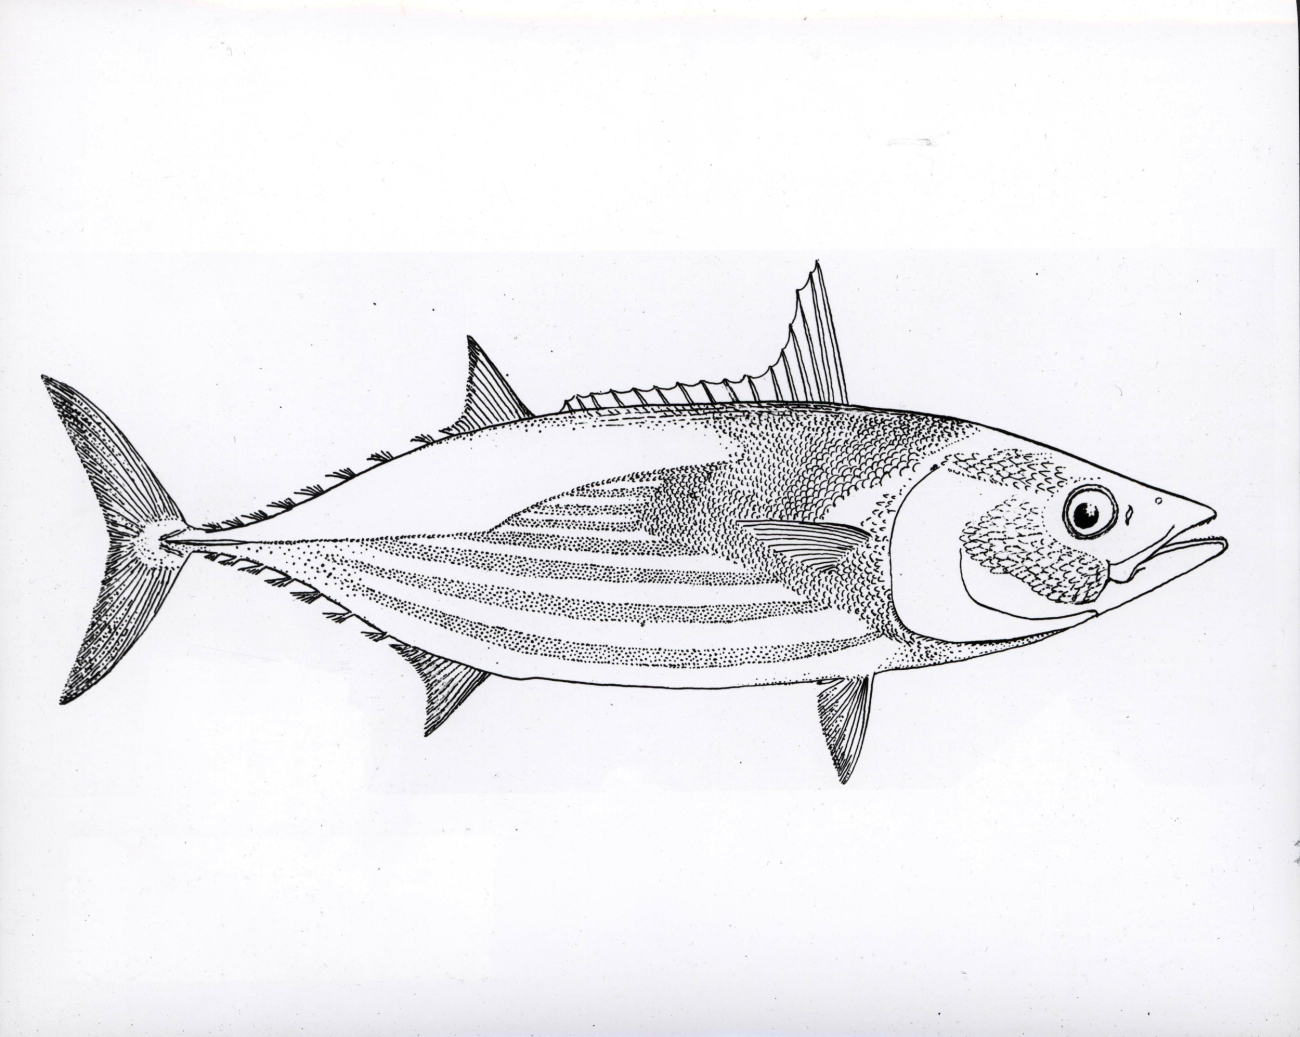 Fish art - Bonito (Gynmosarda pelamis)